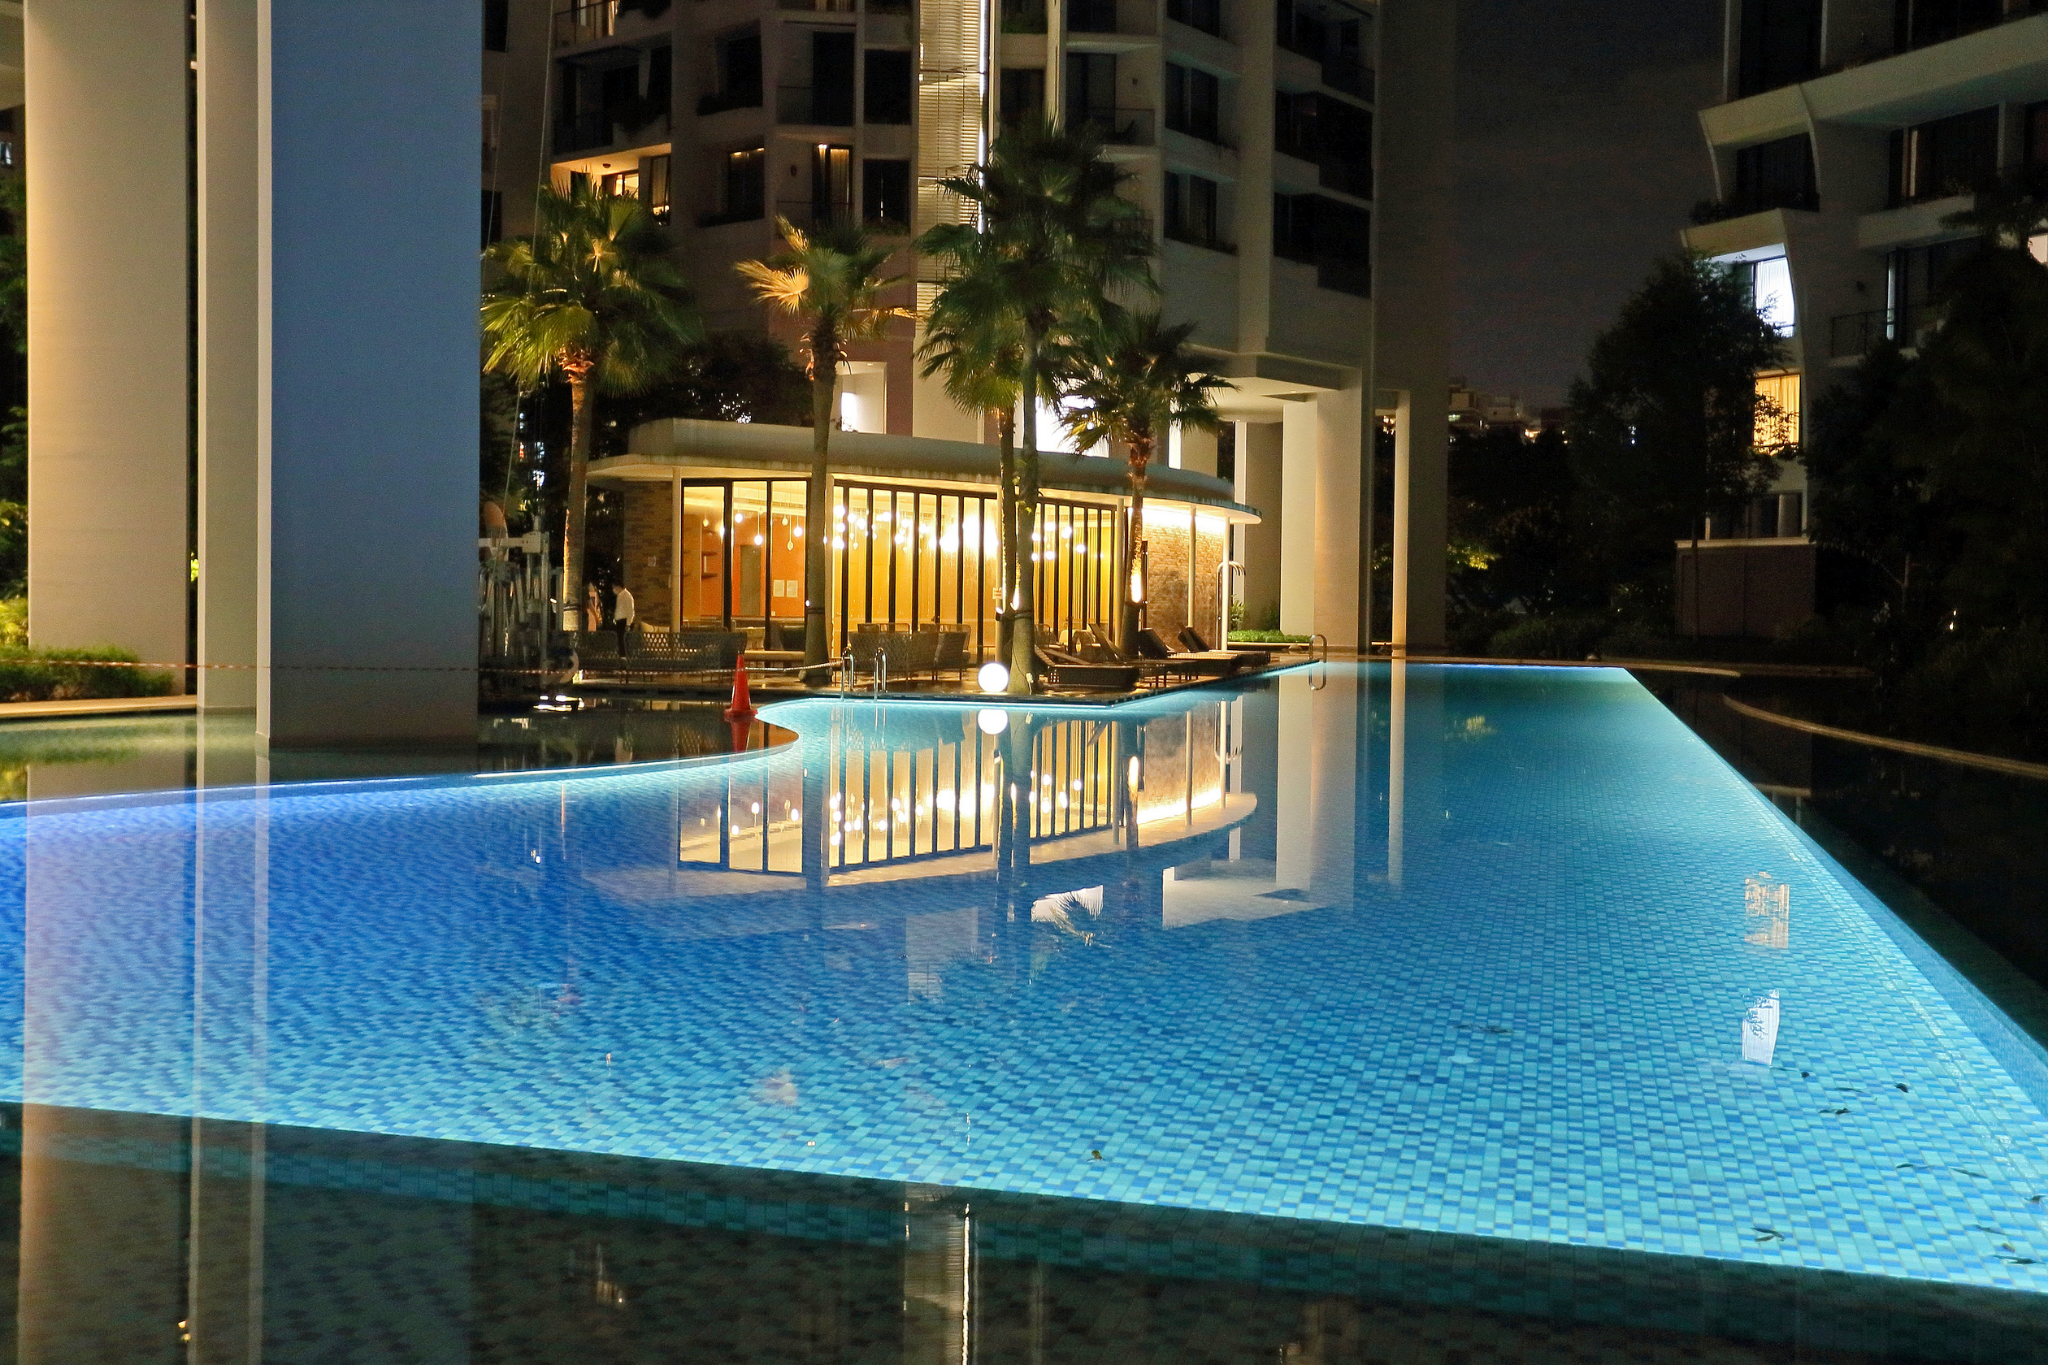 condo pool lighting singapore